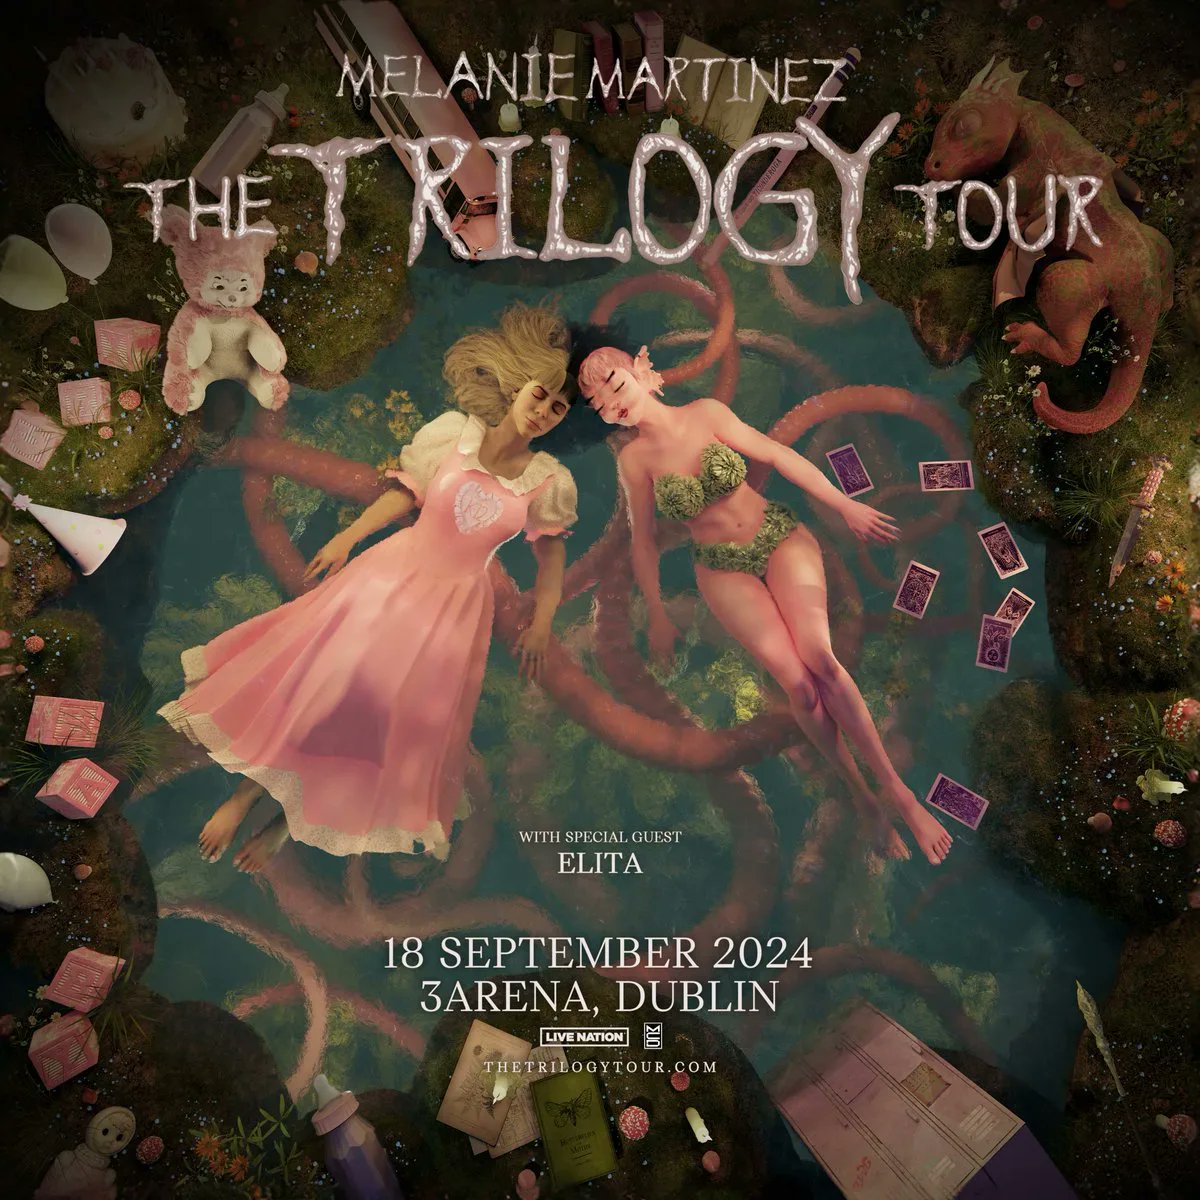 Melanie Martinez - The Trilogy Tour at 3Arena Dublin Tickets